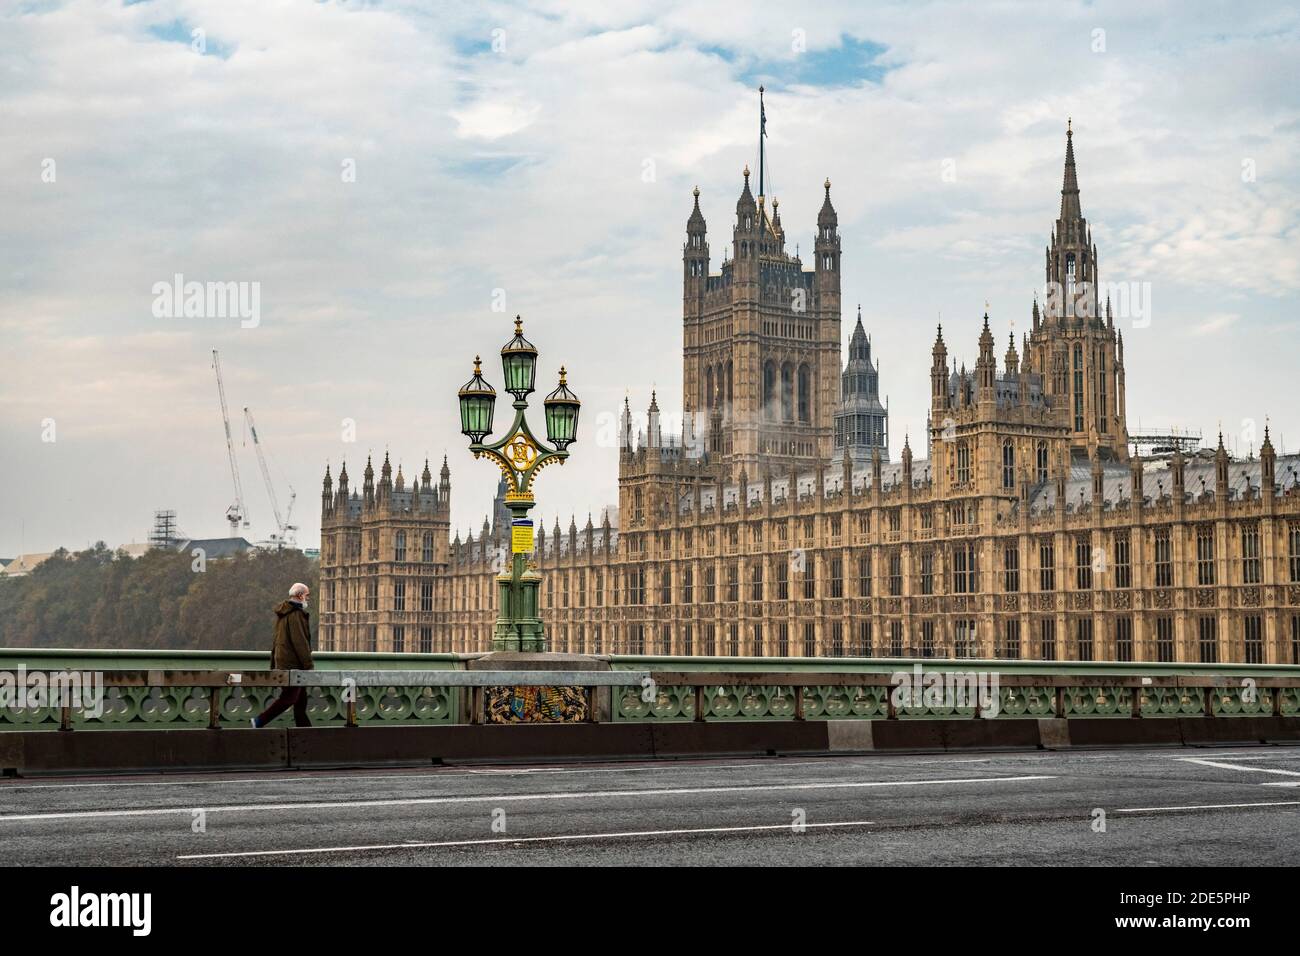 Londra a Coronavirus Covid-19 Lockdown, tranquilla con strade vuote e strade senza quasi nessuna gente, solo una persona che si trova in viaggio, con le Camere del Parlamento in Inghilterra, Regno Unito all'ora di punta Foto Stock